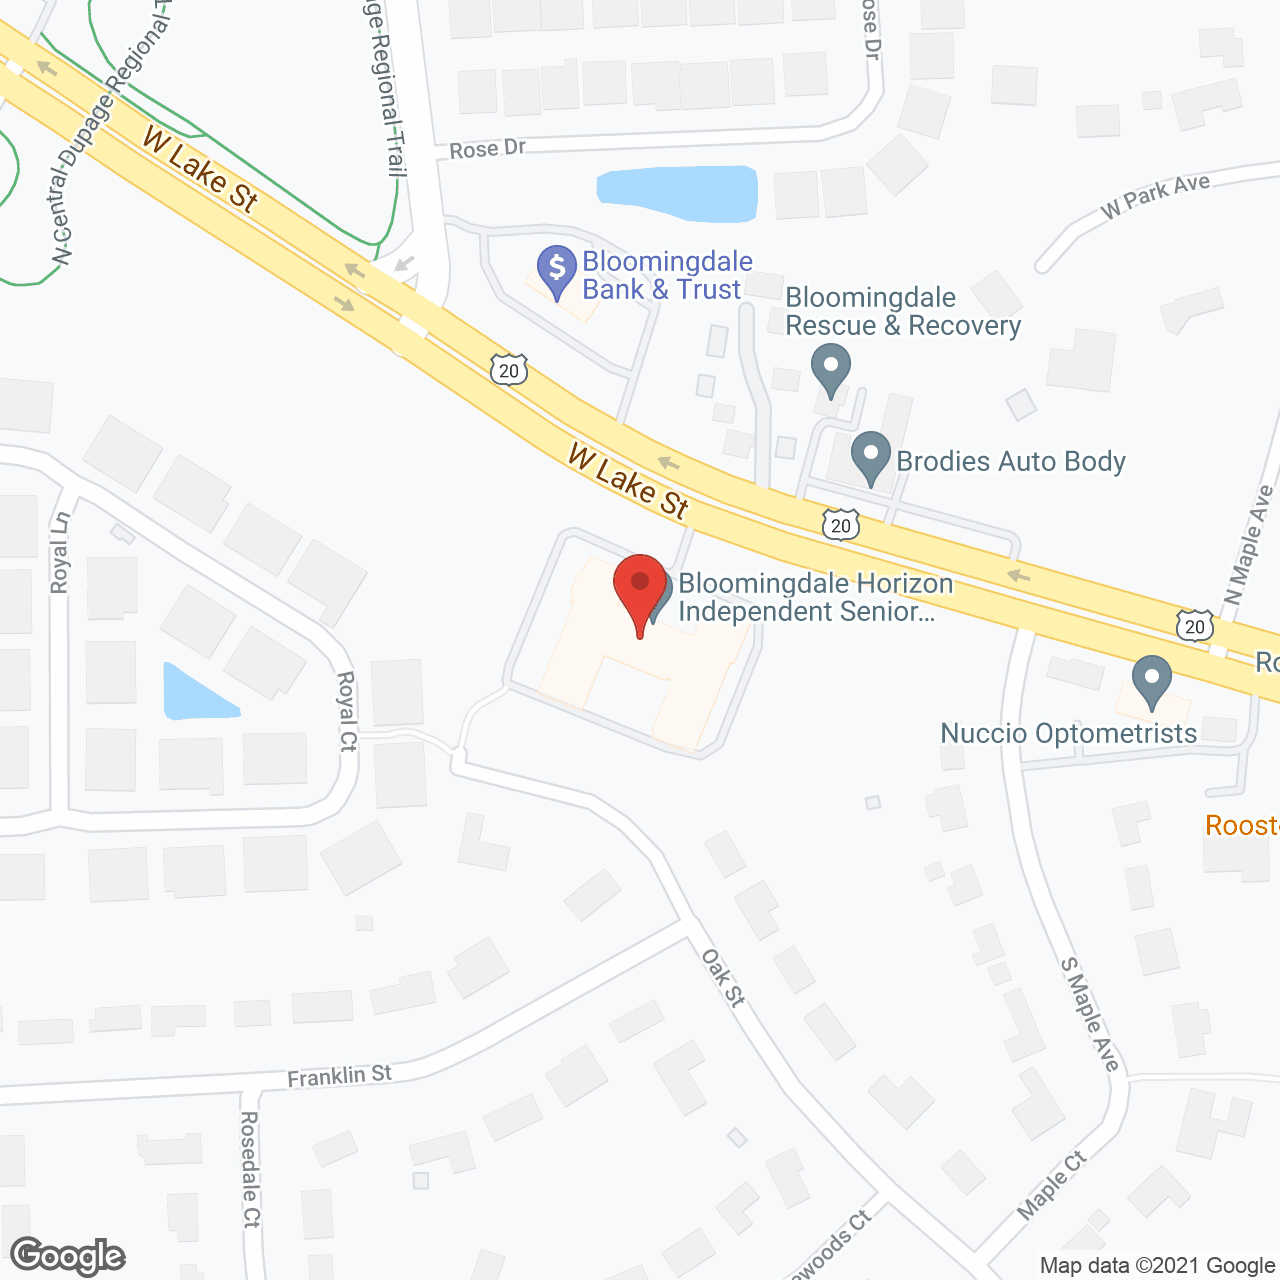 Bloomingdale Horizon in google map